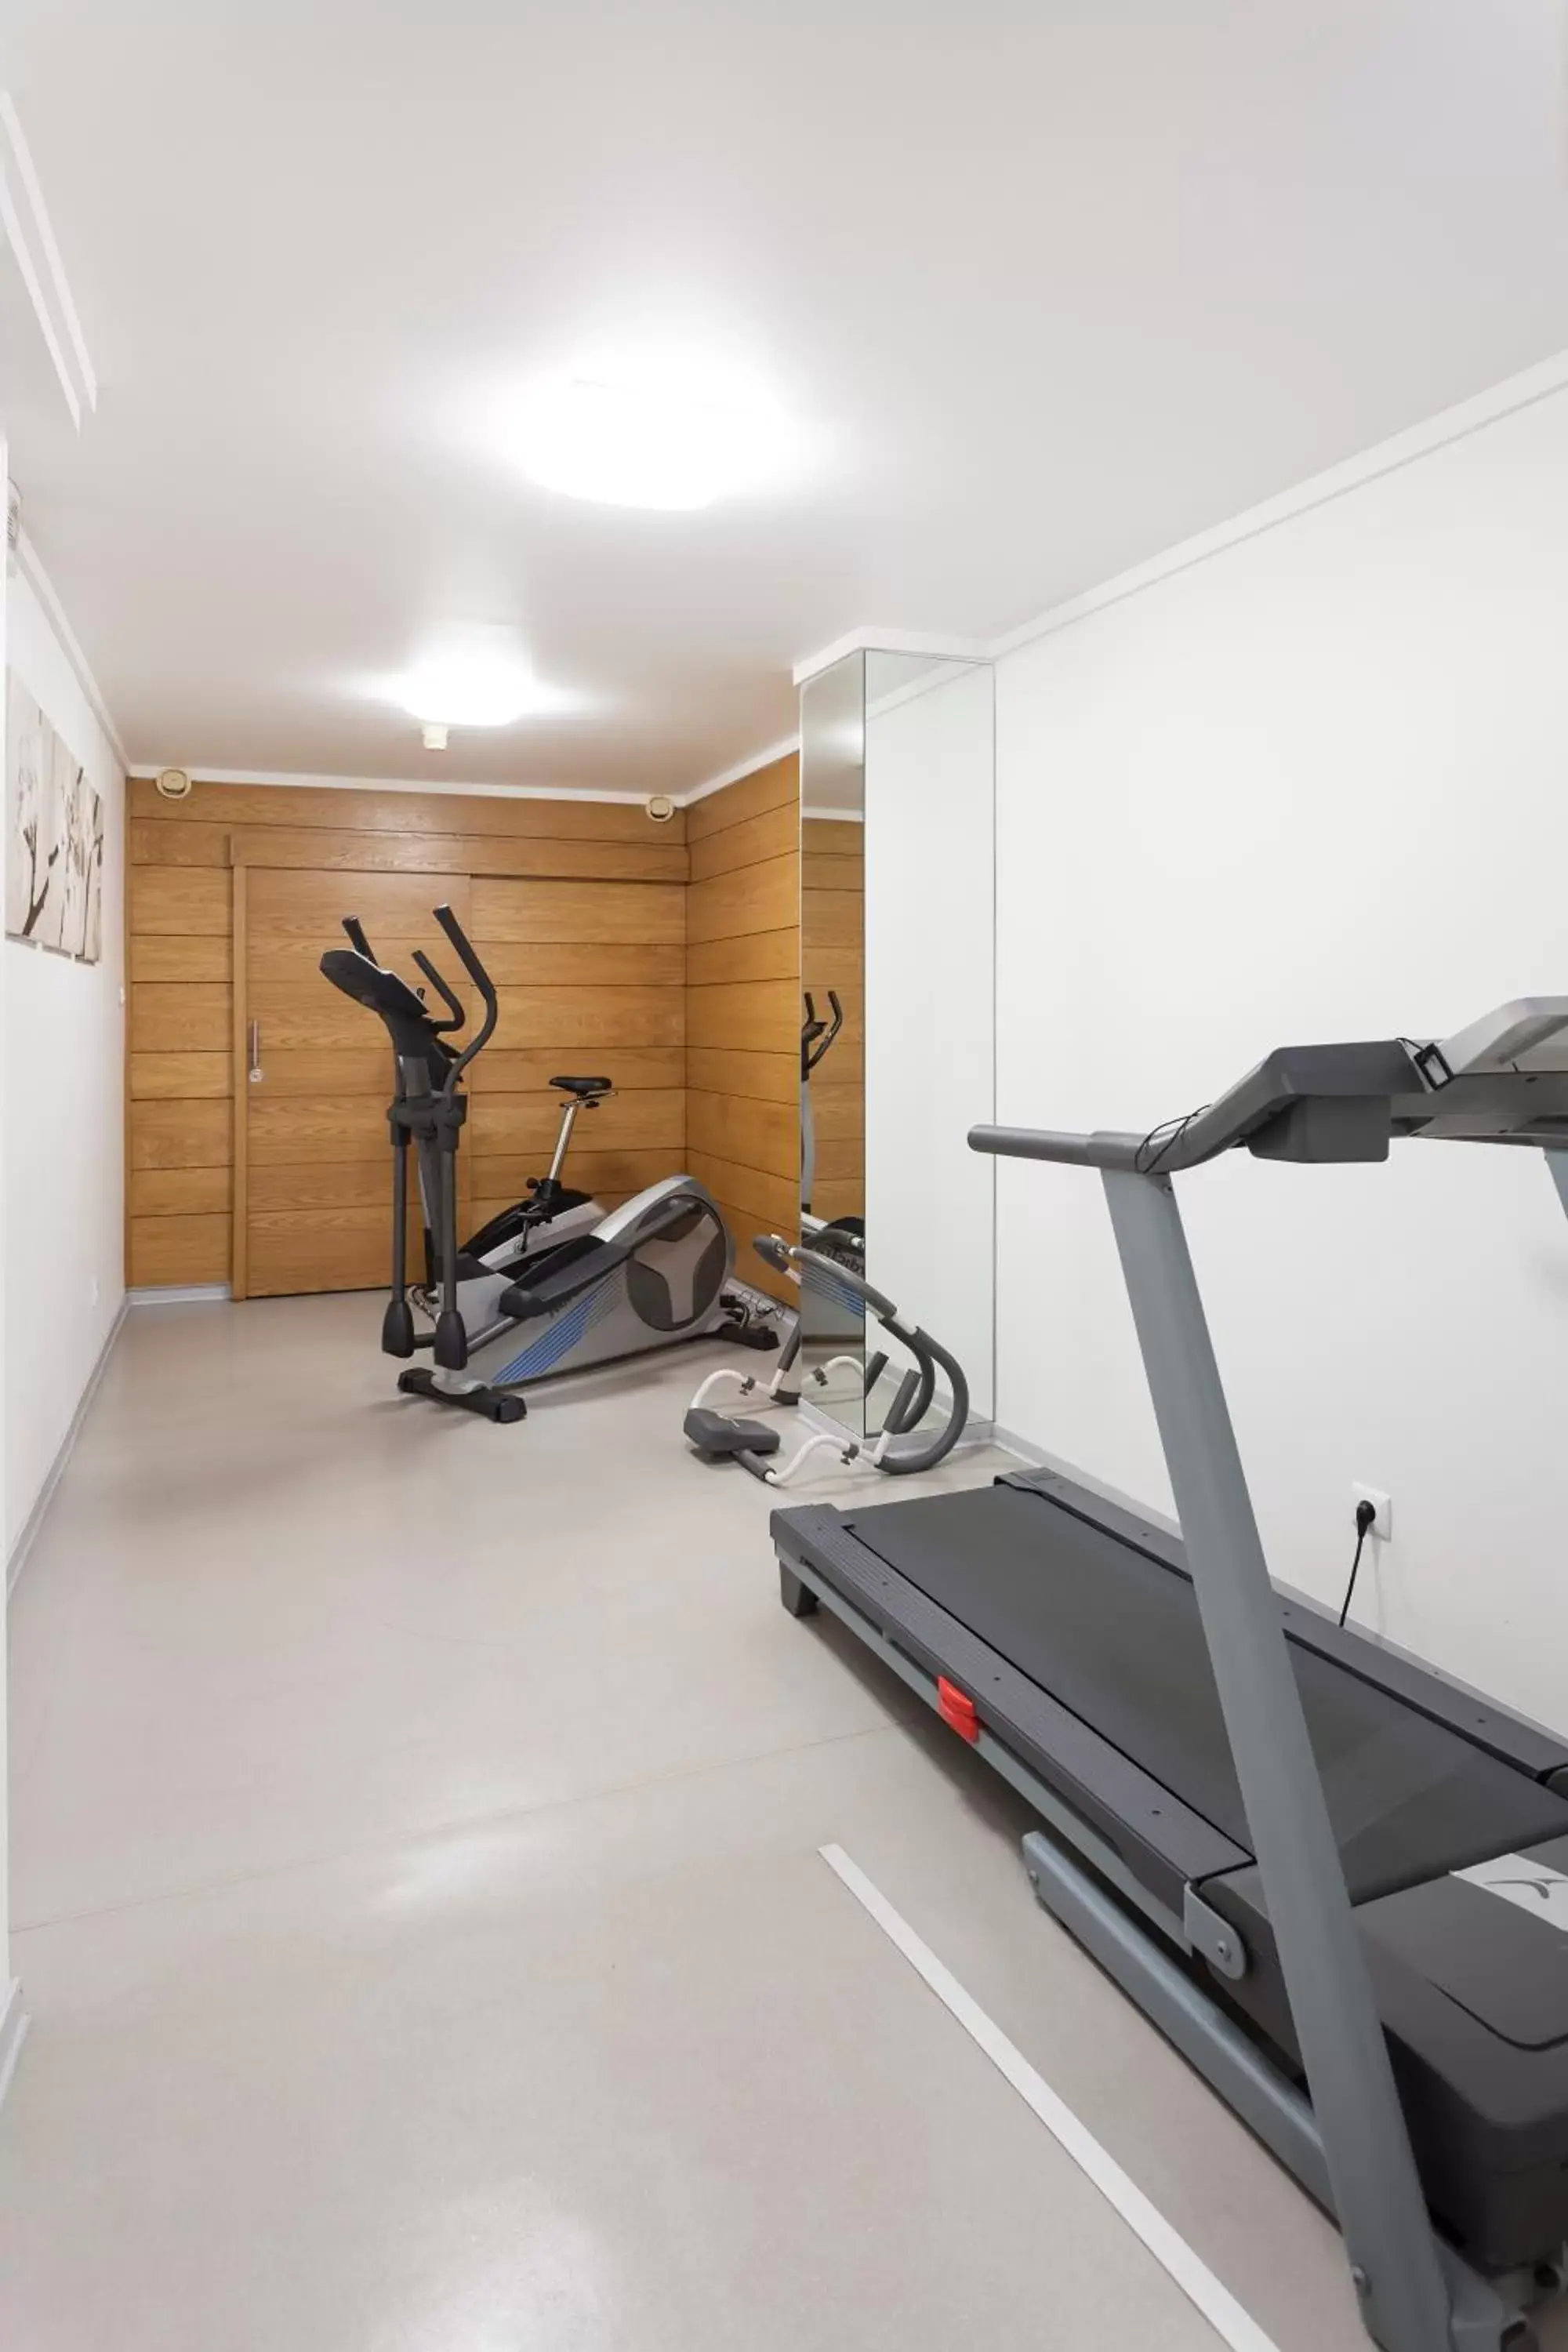 Fitness centre/facilities, Fitness Center/Facilities in Casual Inca Porto